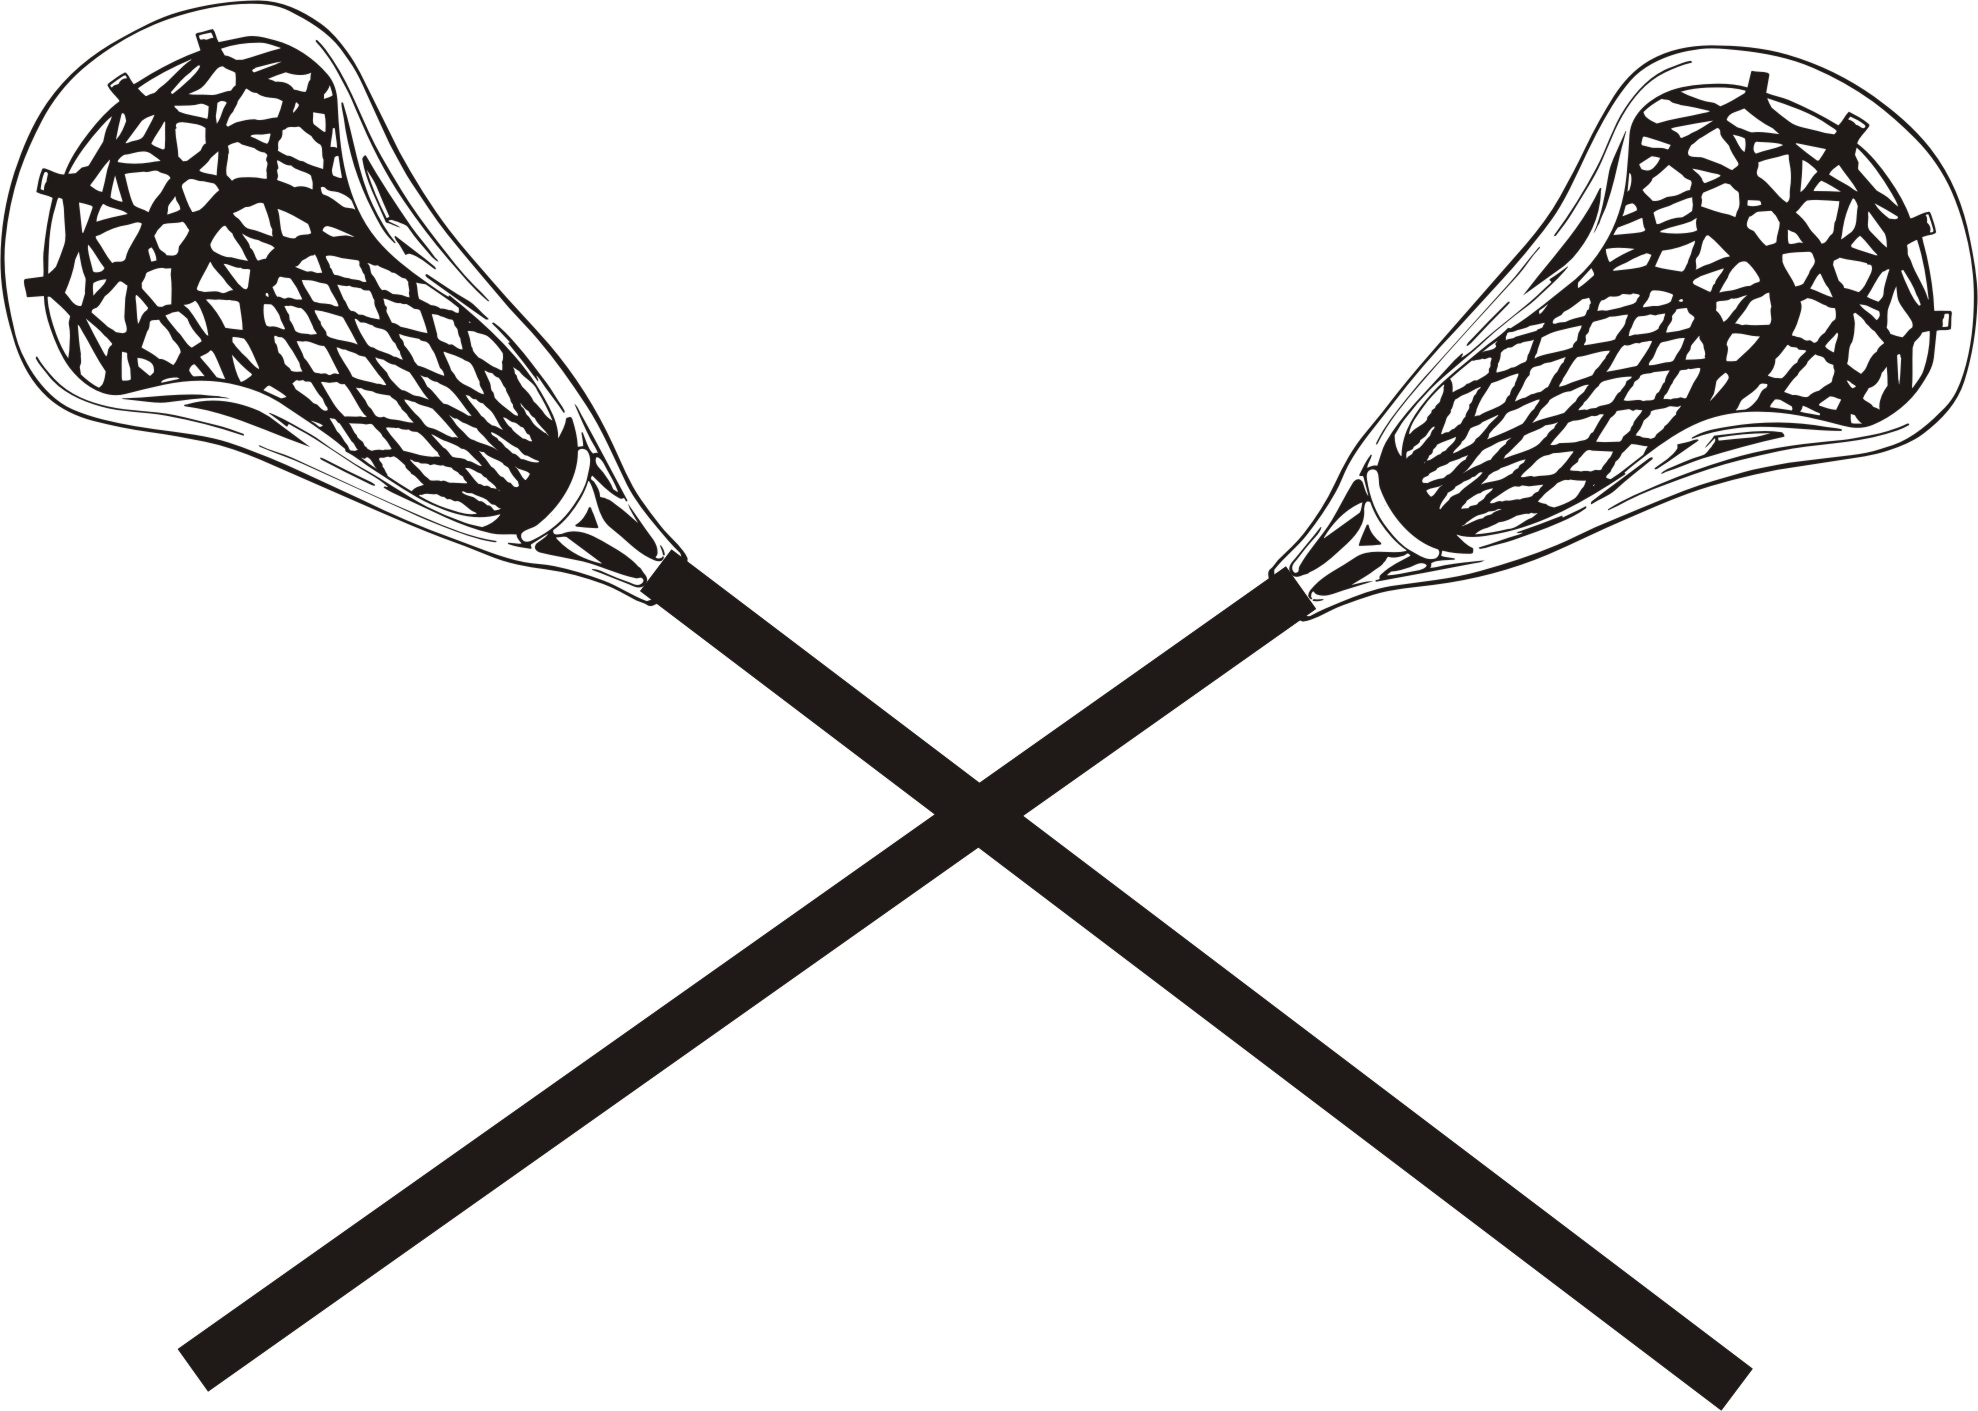 Lacrosse clip art images . - Lacrosse Stick Clipart